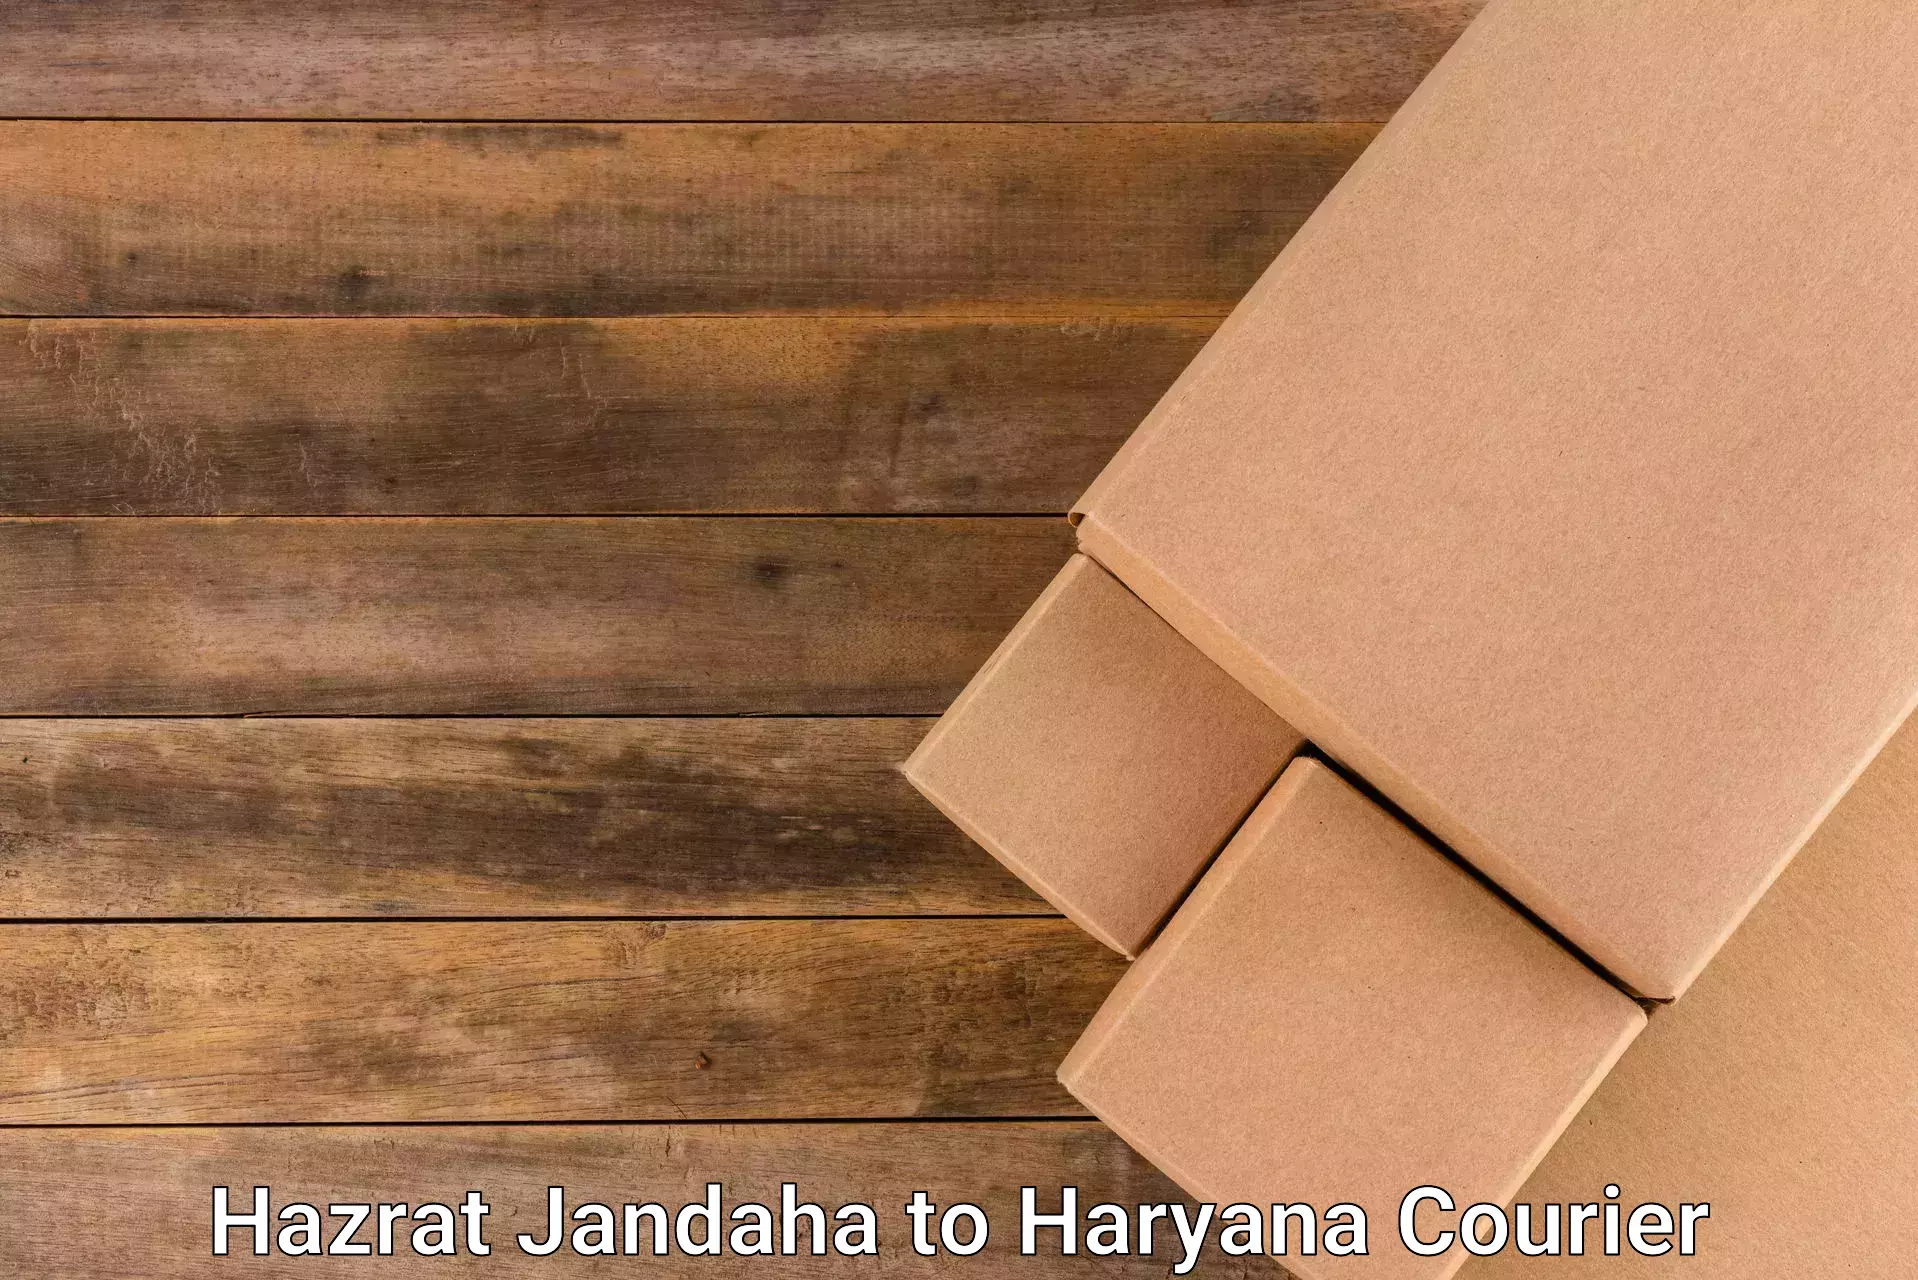 Nationwide delivery network Hazrat Jandaha to Mandi Dabwali